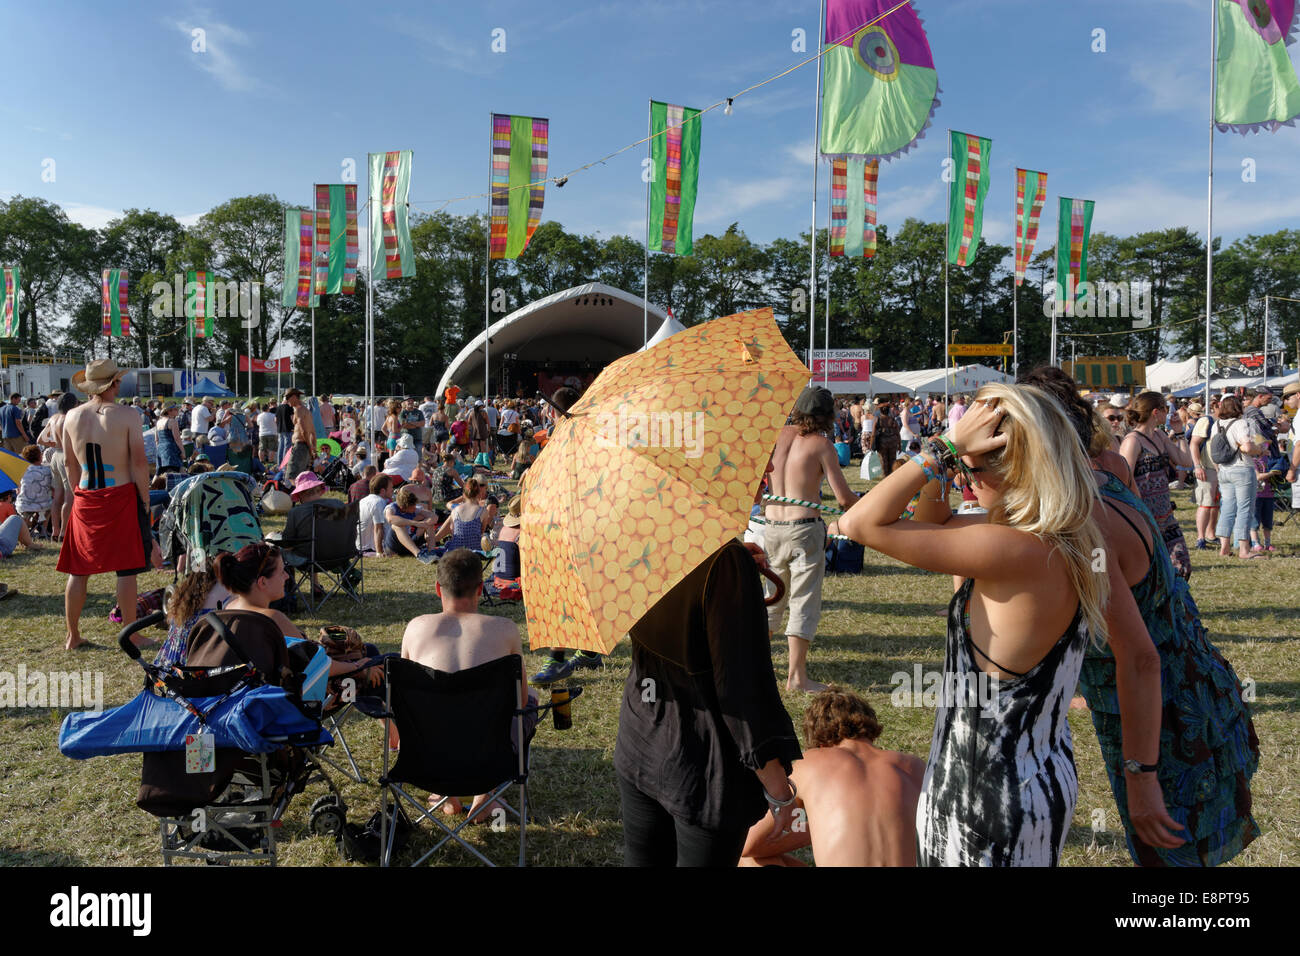 Audience, vague de chaleur, bains de soleil, parapluies, radio 3 Stage, WOMAD 2014, Charlton Park, Wiltshire, Angleterre, Royaume-Uni, GB. Banque D'Images